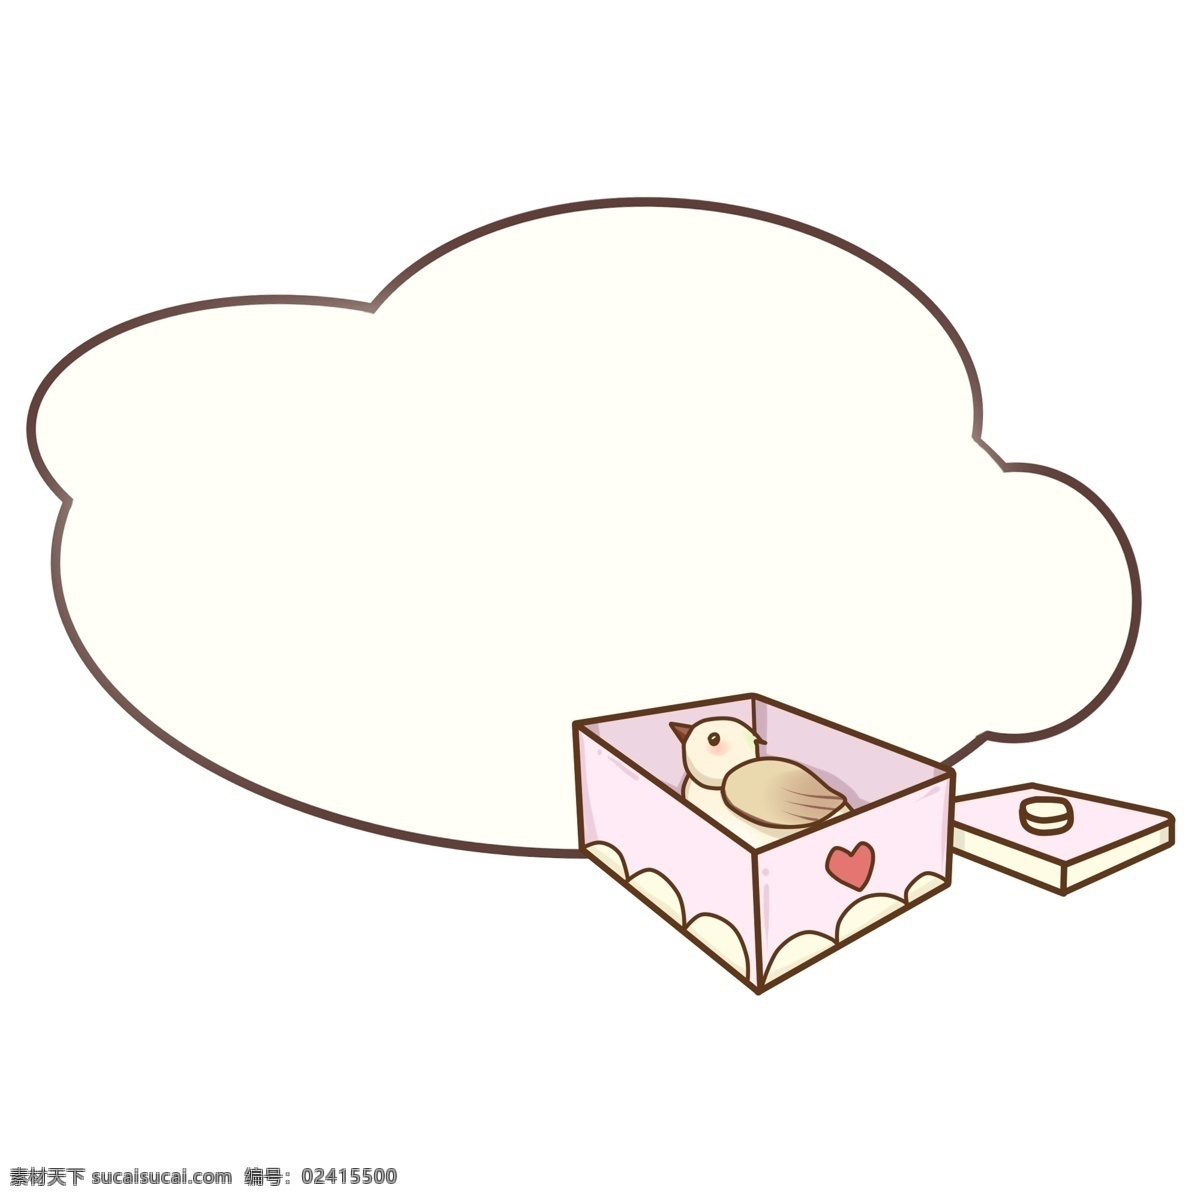 可爱 小鸟 盒子 文本 框 可爱边框 白色云朵装饰 粉色礼盒插画 小动物小鸟 卡通边框